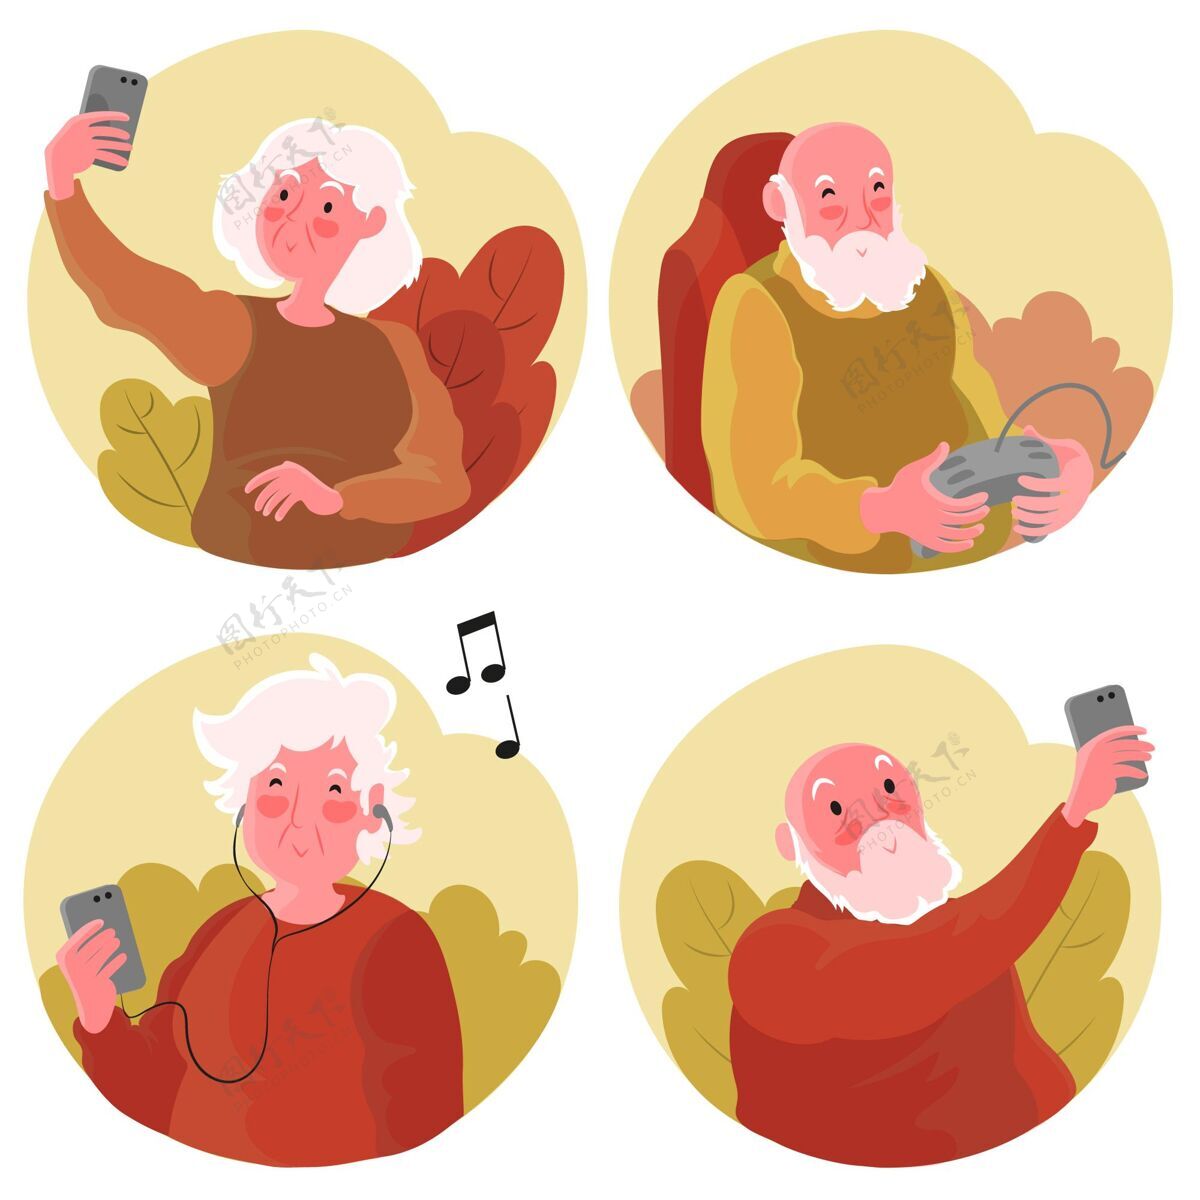 老年人平手绘老年人使用的技术插图技术老年人